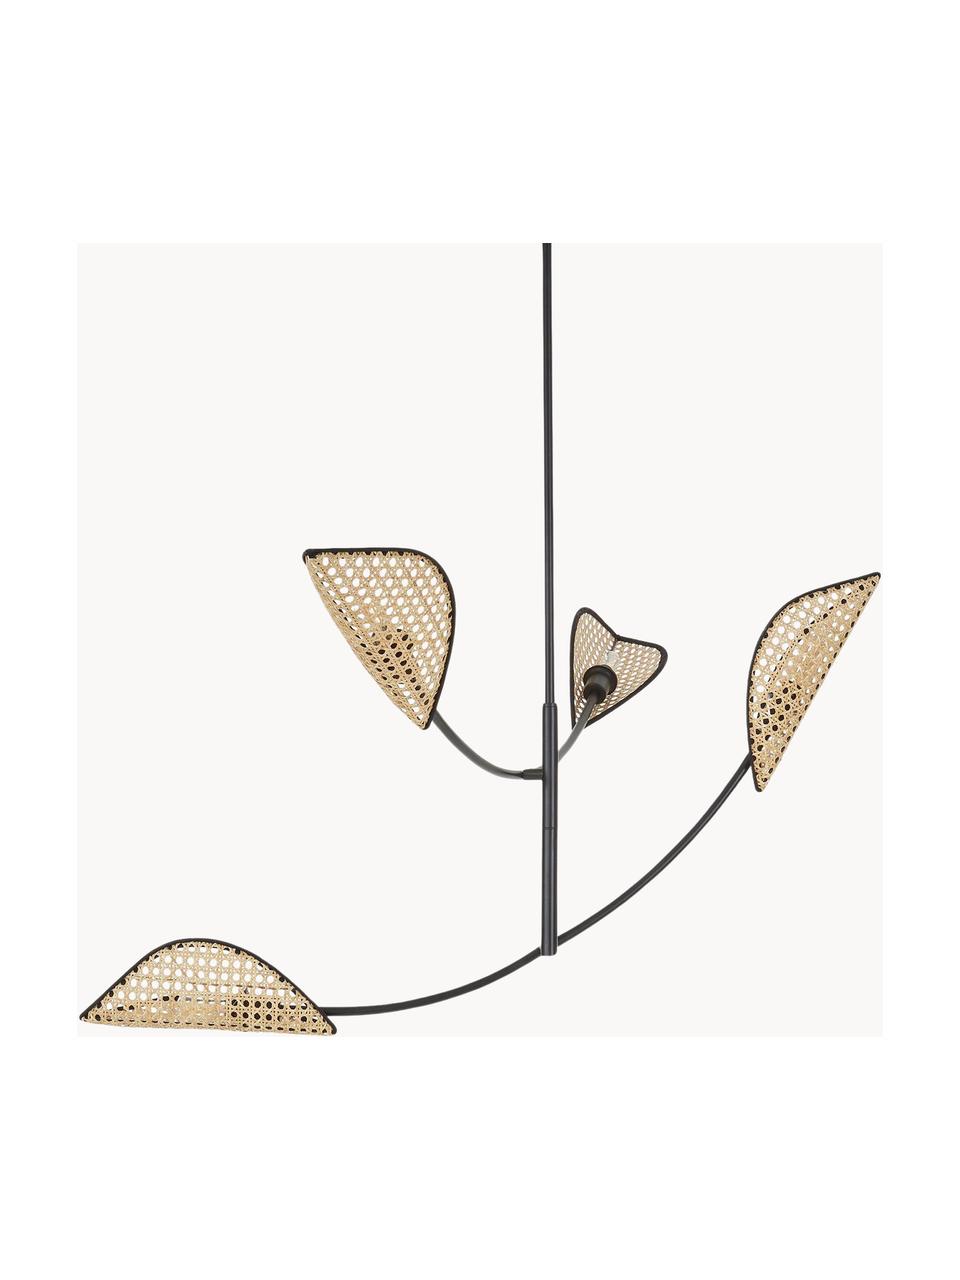 Grote hanglamp Freja van Weens vlechtwerk, Zwart, lichtbruin, B 112 x H 89 cm